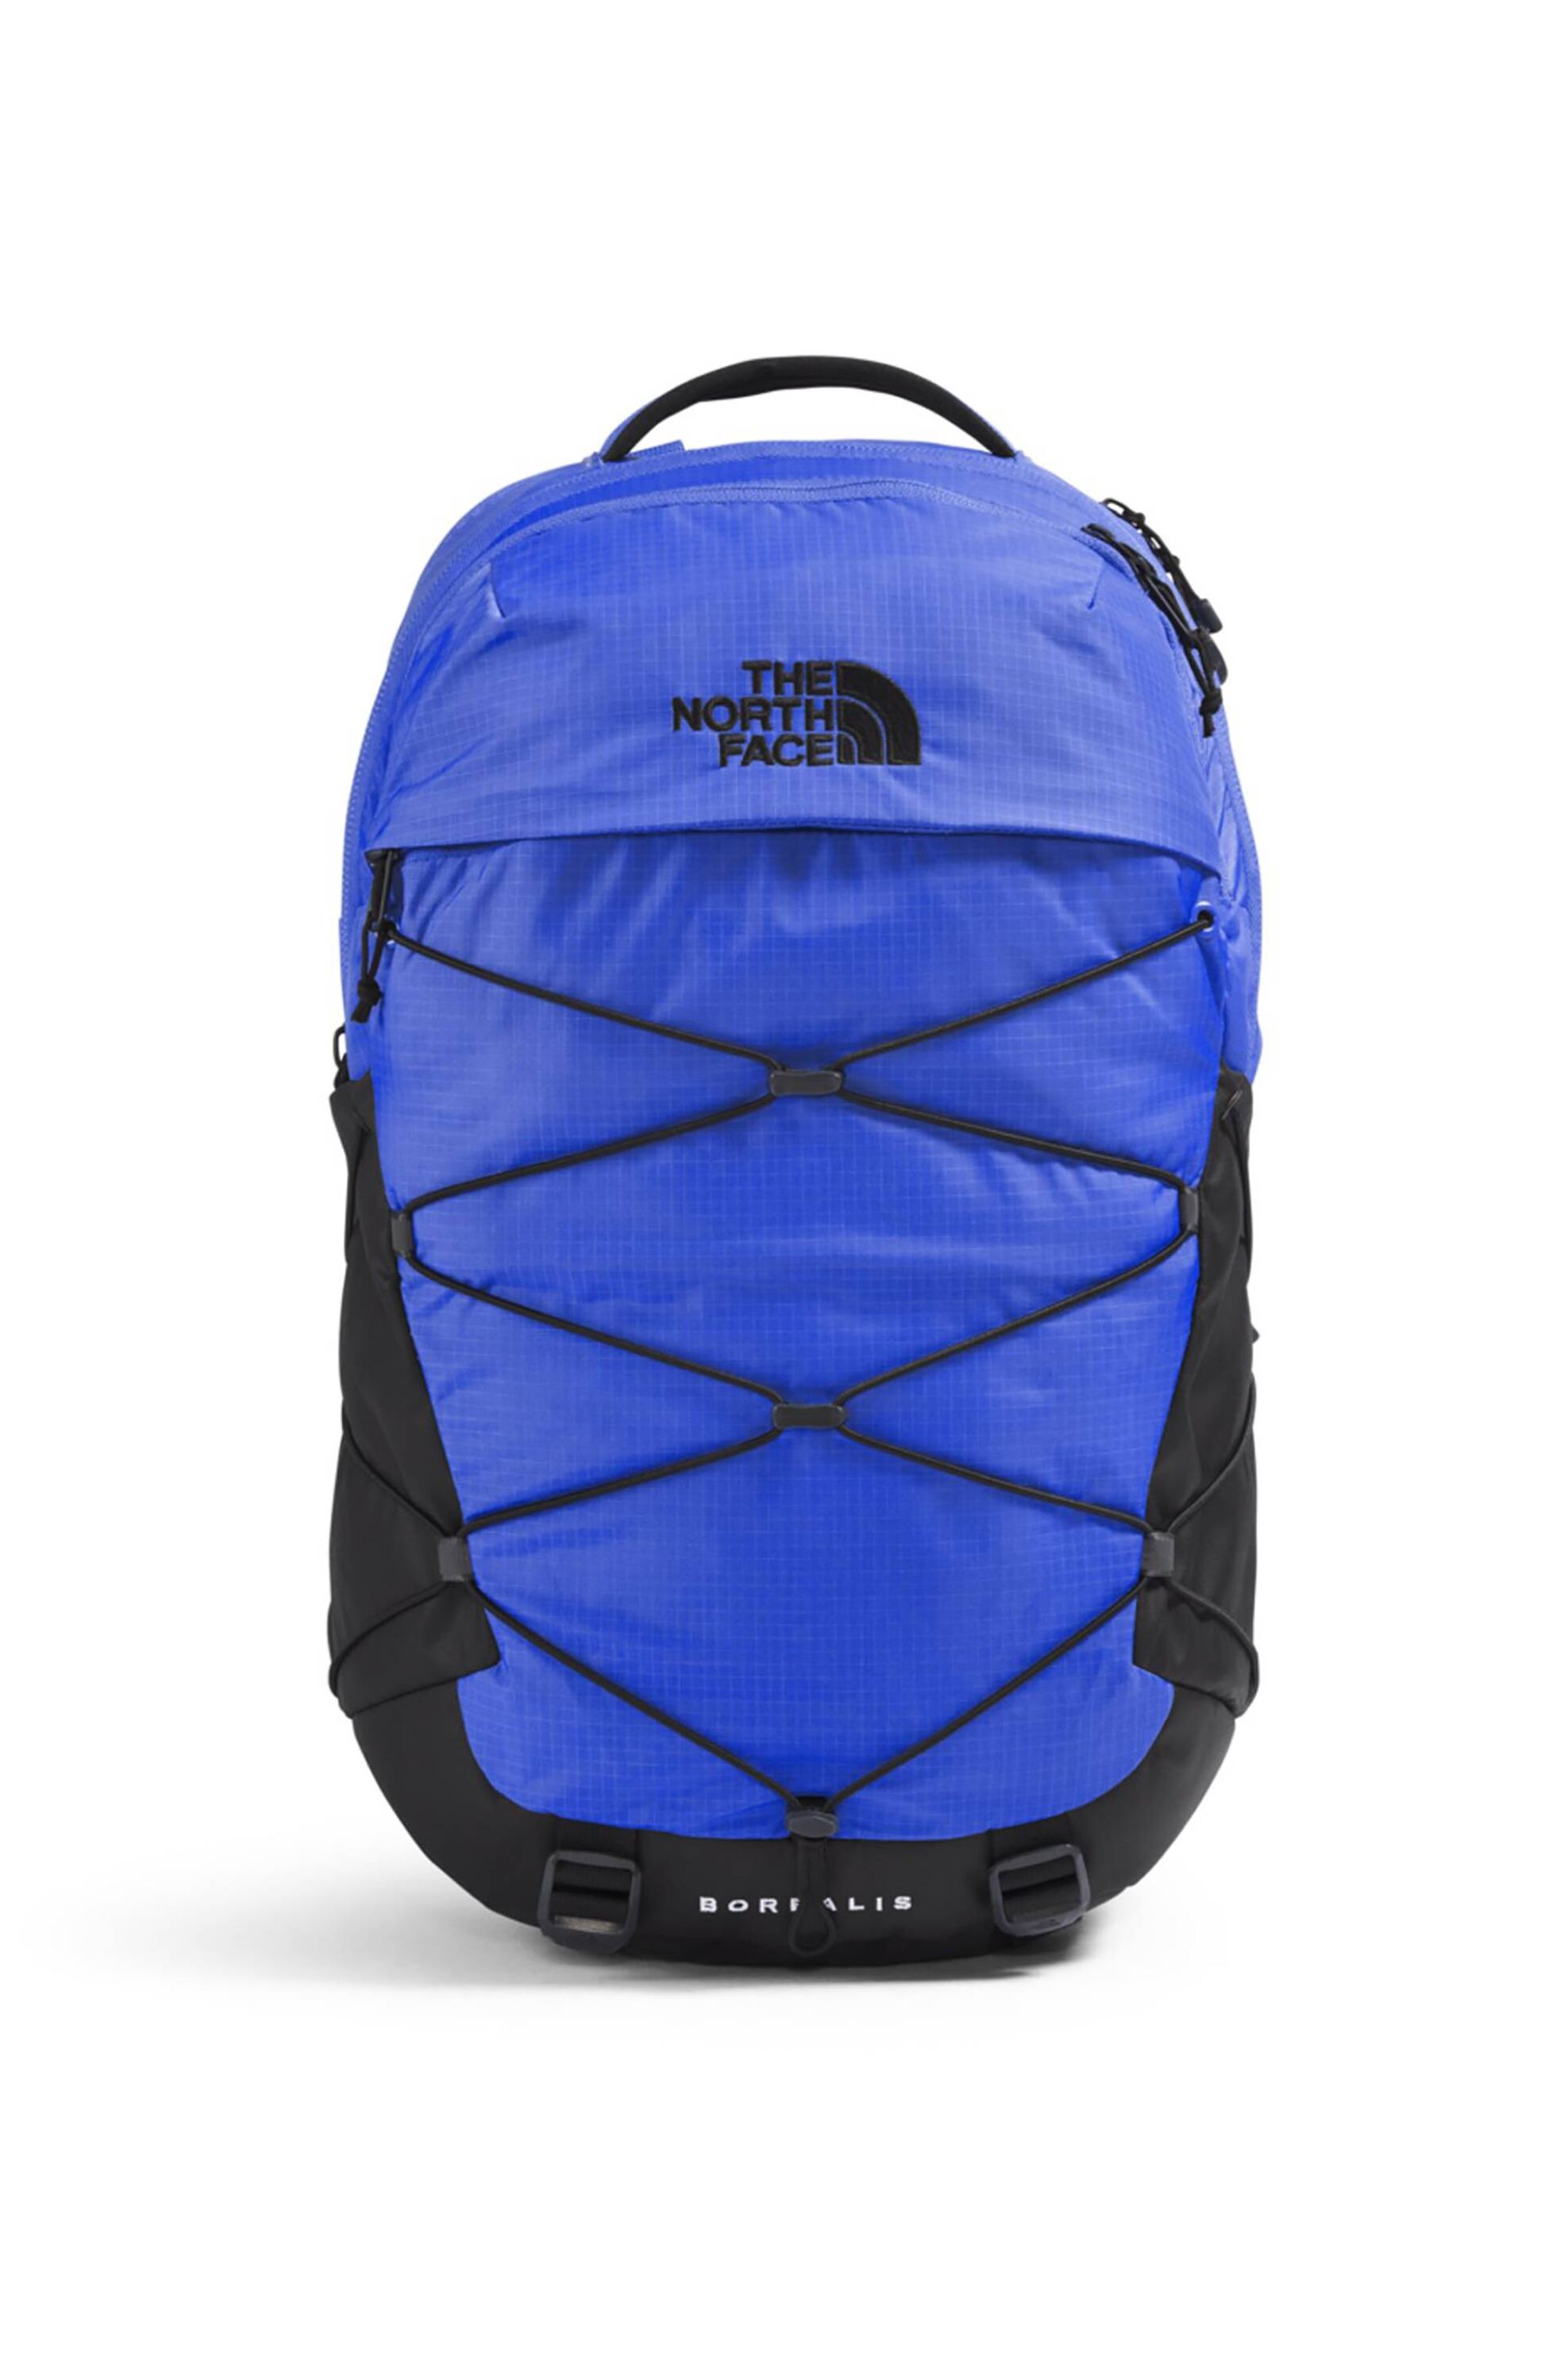 Ανδρική Μόδα > Ανδρικές Τσάντες > Ανδρικά Σακίδια & Backpacks The North Face unisex backpack δίχρωμο με κεντημένο contrast λογότυπο "Borealis" - NF0A52SERQI1 Γαλάζιο